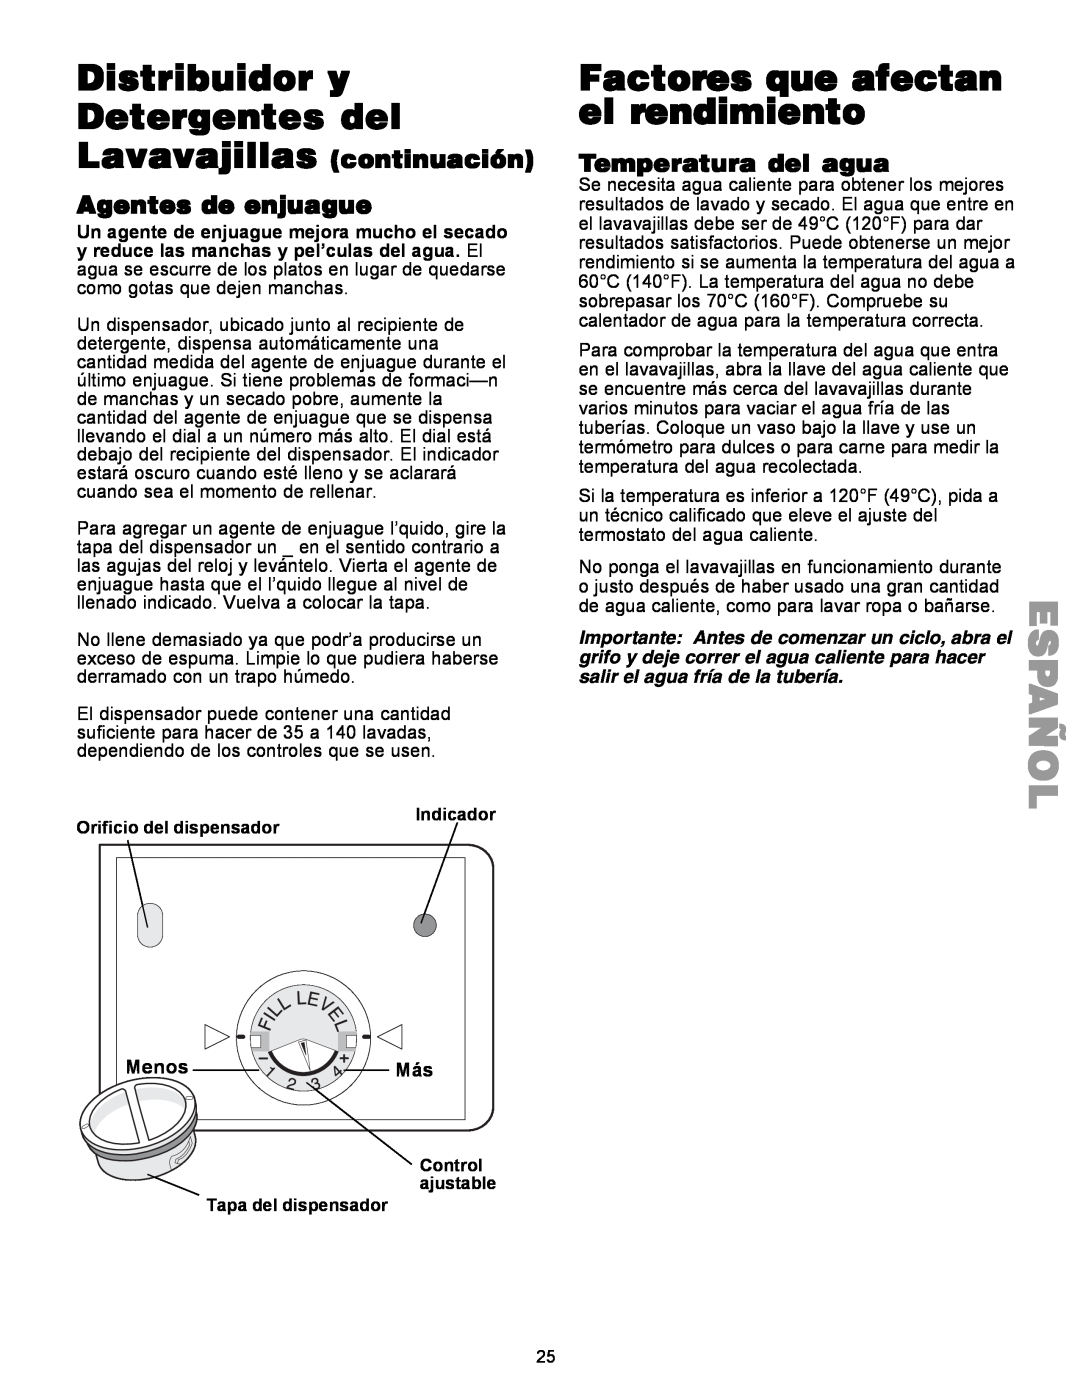 Kenmore 587.1441 manual Distribuidor y Detergentes del, Factores que afectan el rendimiento, Temperatura del agua, Menos 